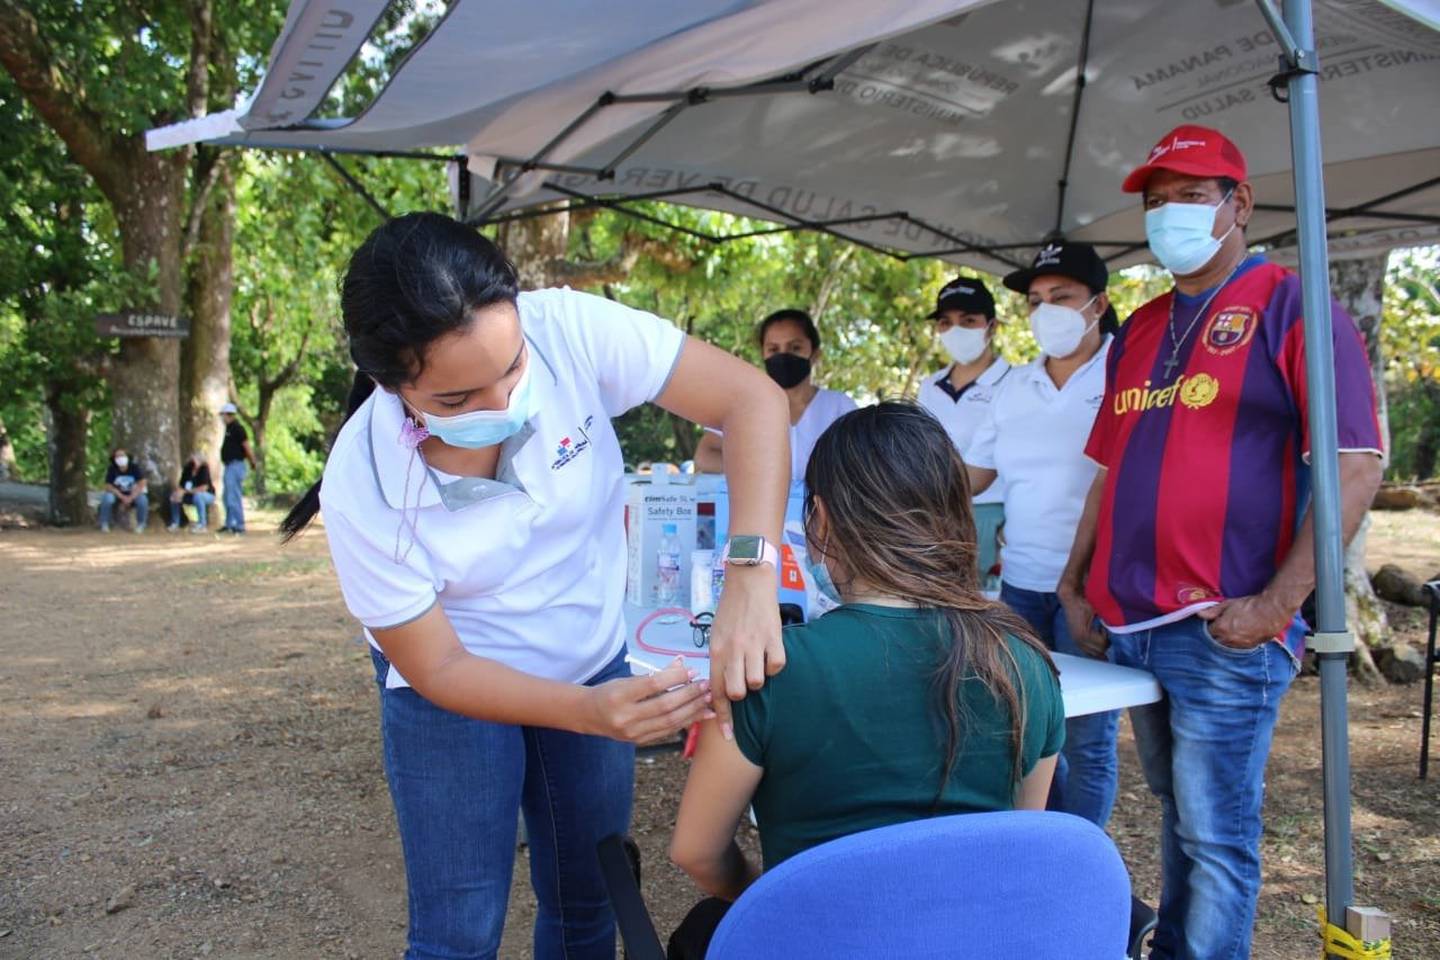 Panamá tiene 4.2 millones de habitantes, 762,735 casos de Covid, 8,160 fallecidos y 7,889,044 vacunas aplicadas.